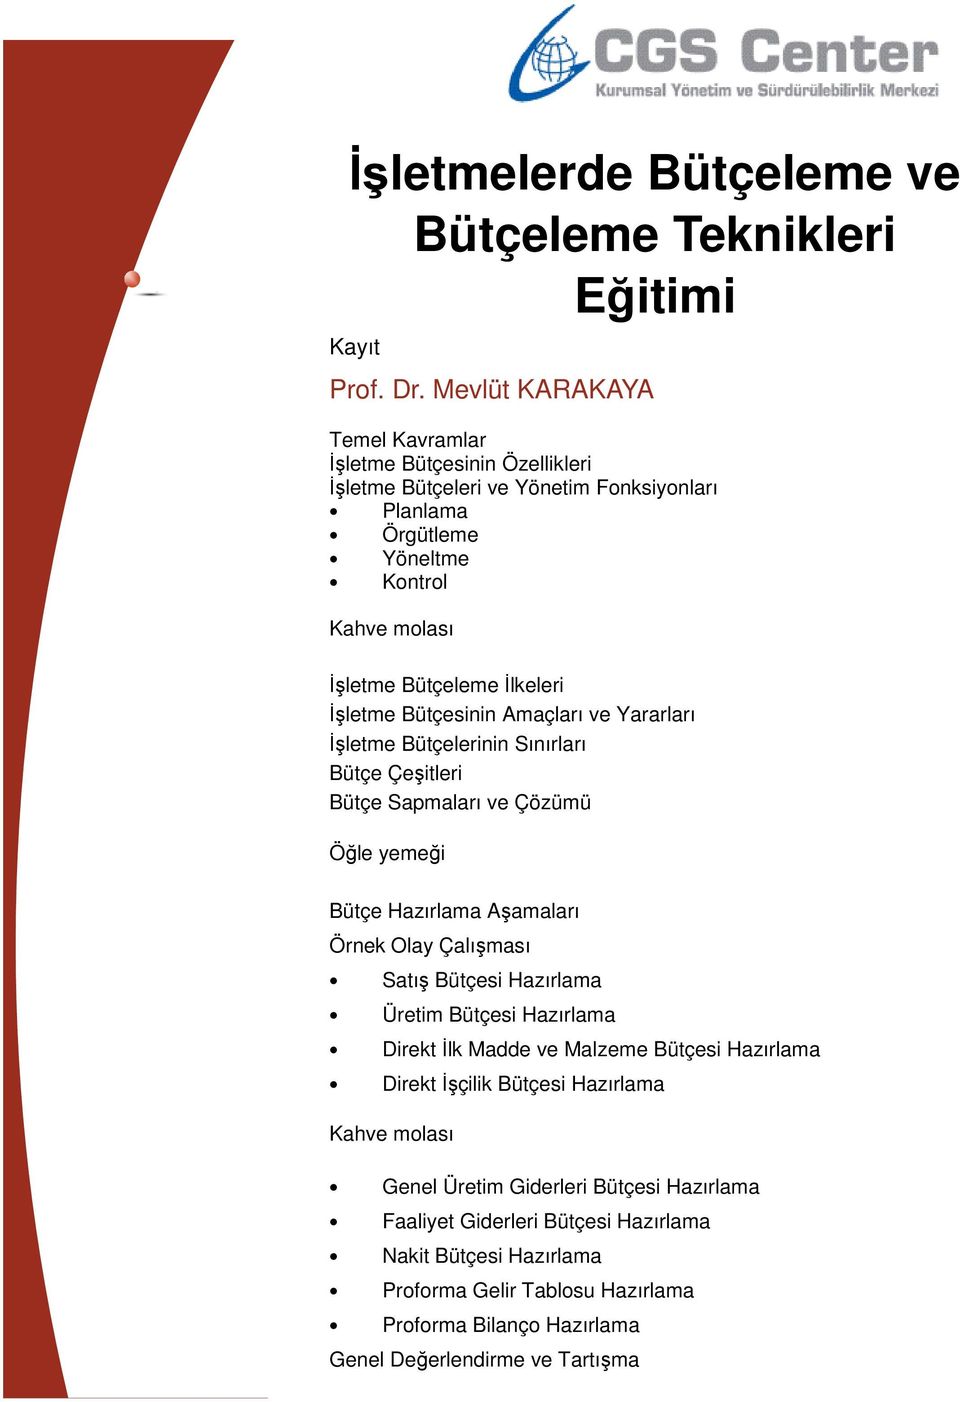 Bütçesinin Amaçları ve Yararları İşletme Bütçelerinin Sınırları Bütçe Çeşitleri Bütçe Sapmaları ve Çözümü Öğle yemeği Bütçe Hazırlama Aşamaları Örnek Olay Çalışması Satış Bütçesi Hazırlama